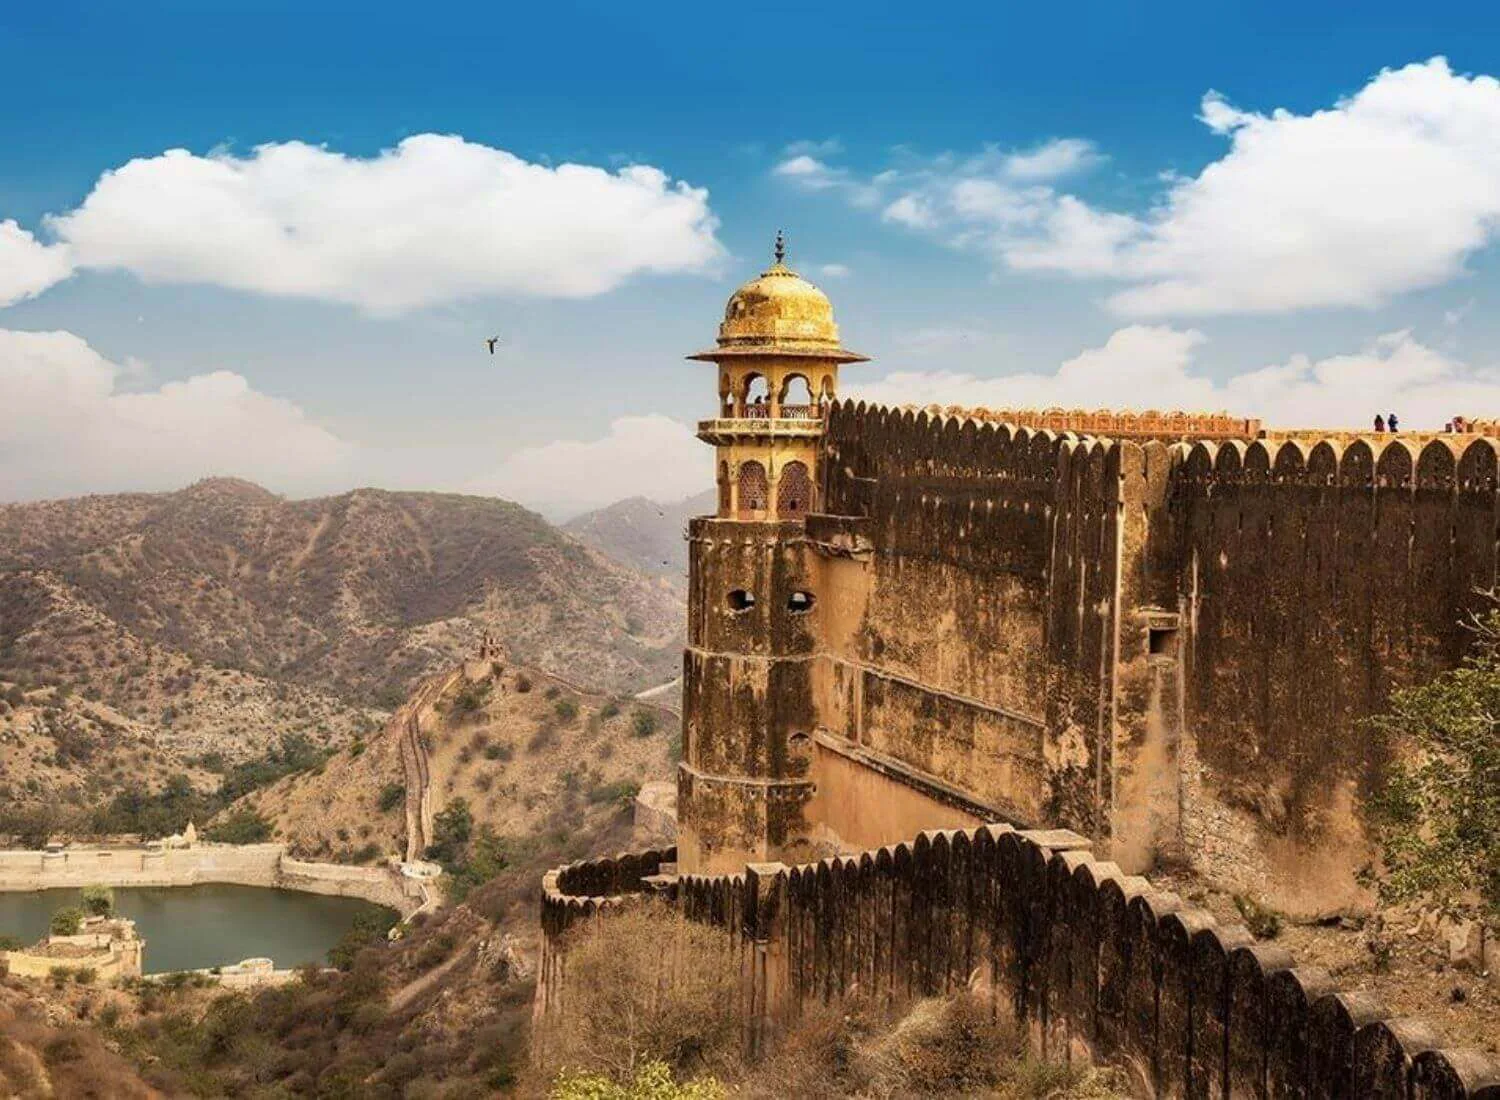 The Royal Treasure Of Jaigarh Fort And Its Conspiracies Unwinding Around Indira Gandhi